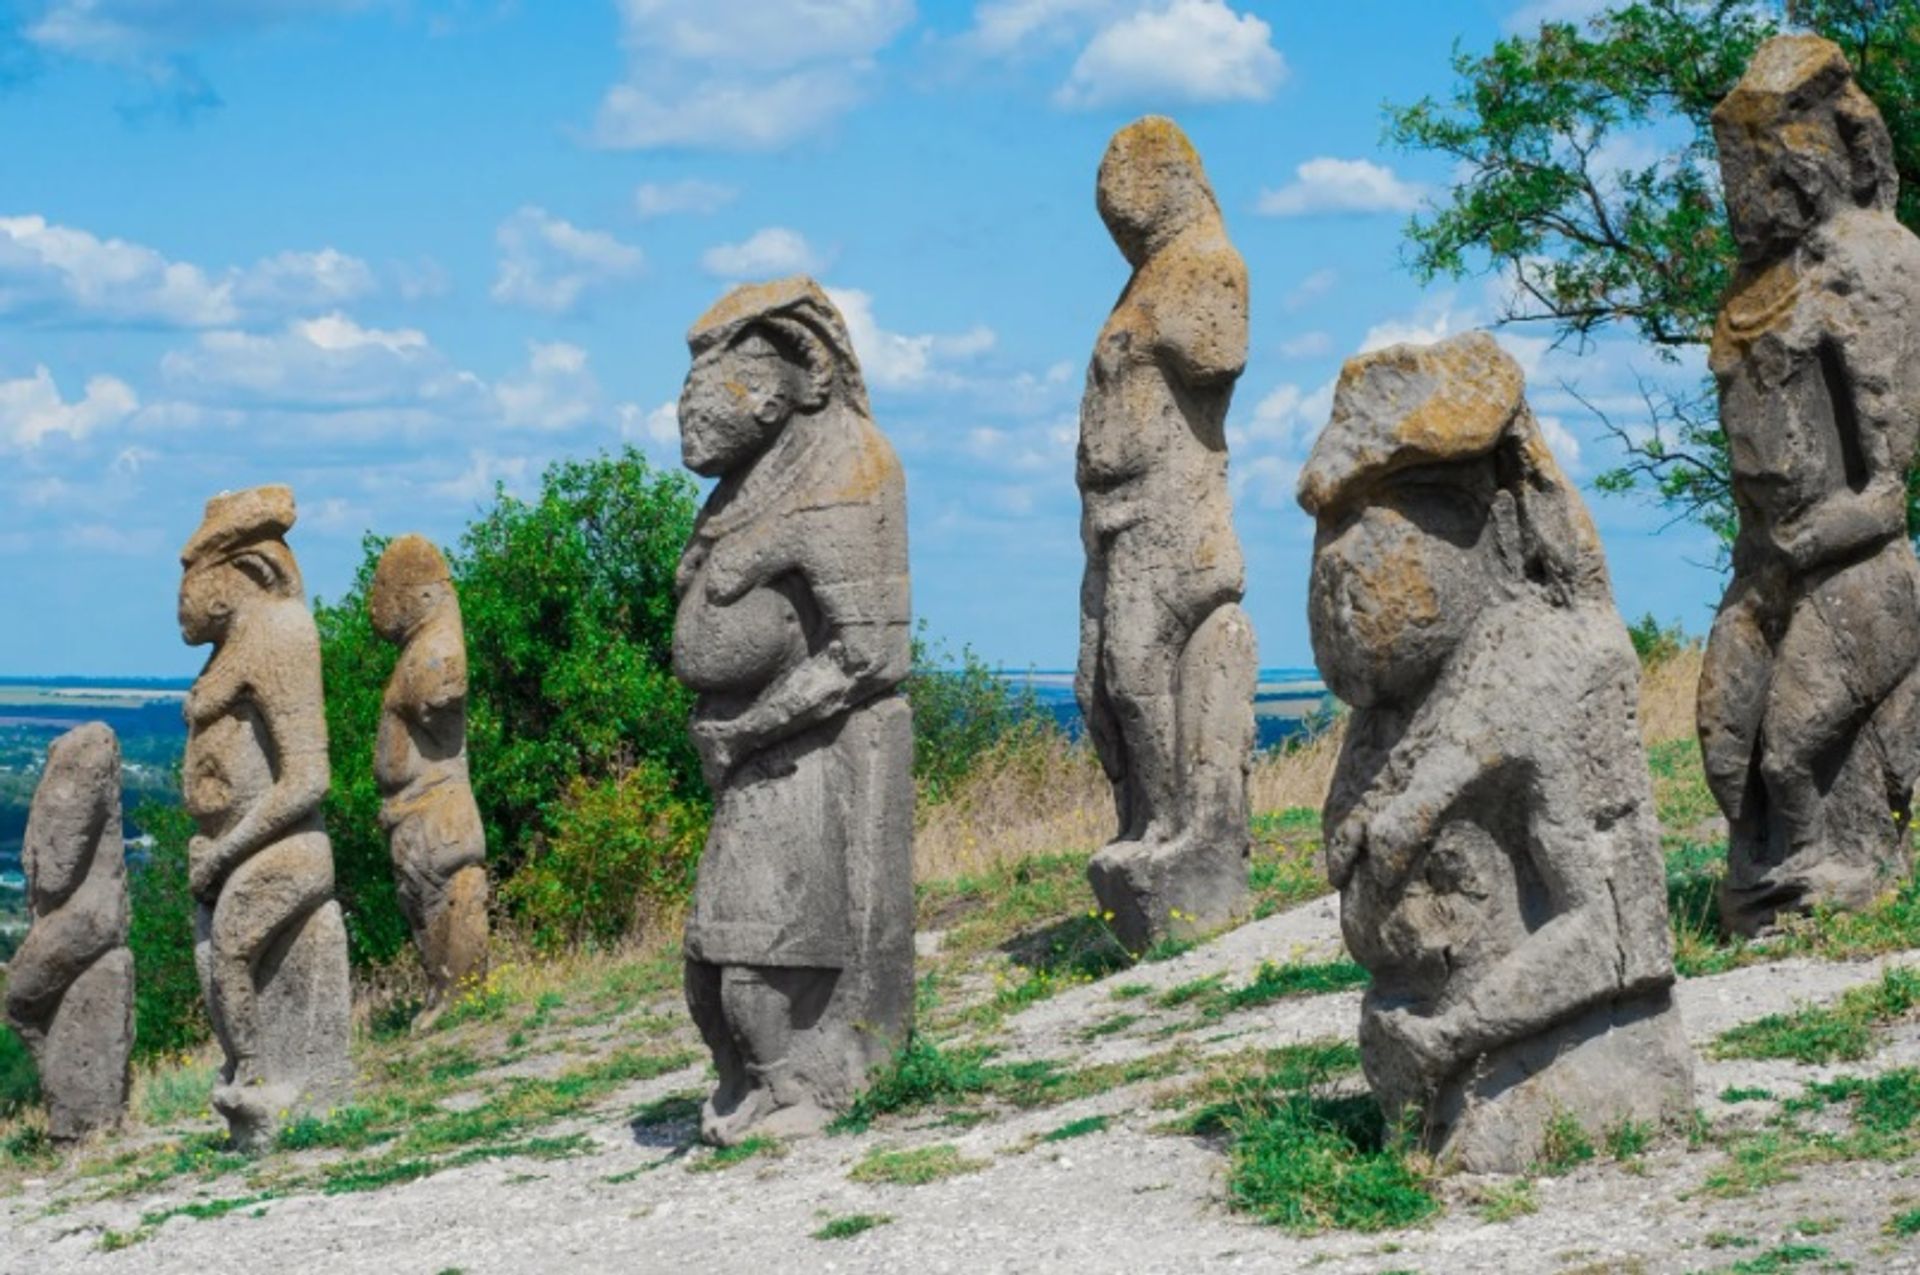 באבות האבן בהר קרמנץ באיזיום, אוקראינה

צילום: אירינה/אדובי סטוק